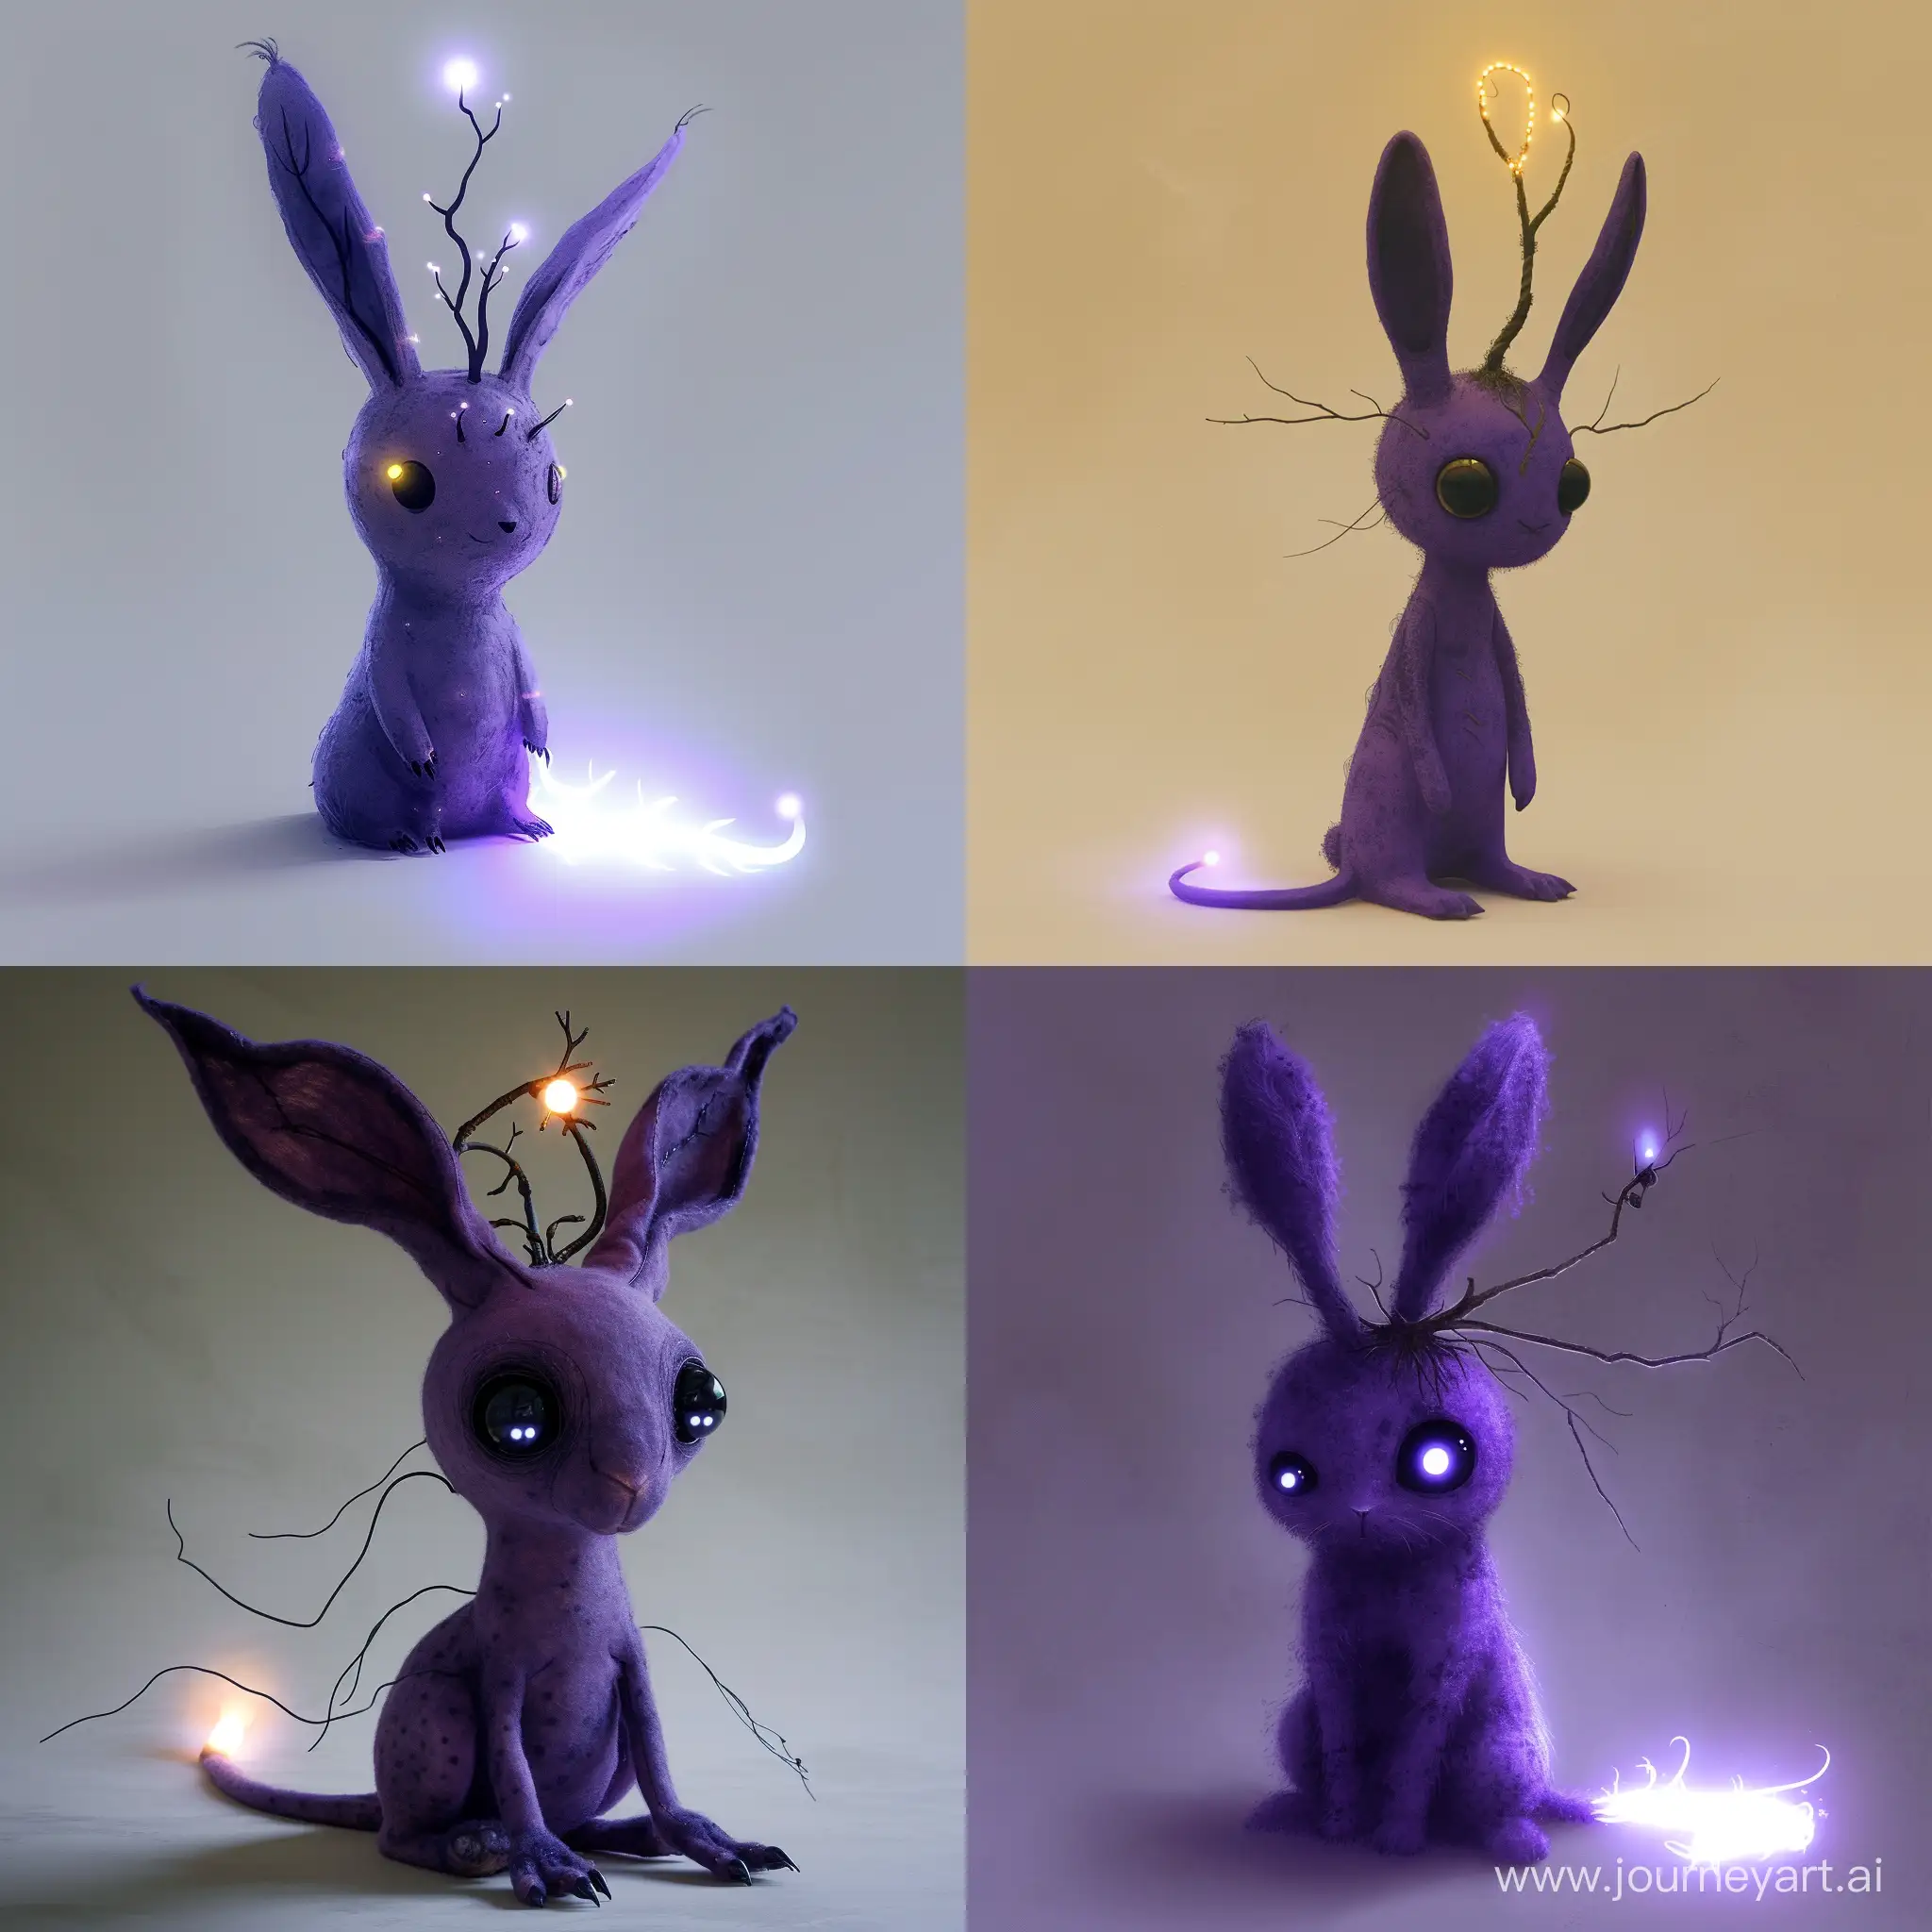 Фиолетовый антропоморфный кролик. С шестью ушами и тремя черными глазами. На голове светящаяся веточка. Длинный хвост светящийся на конце. 
